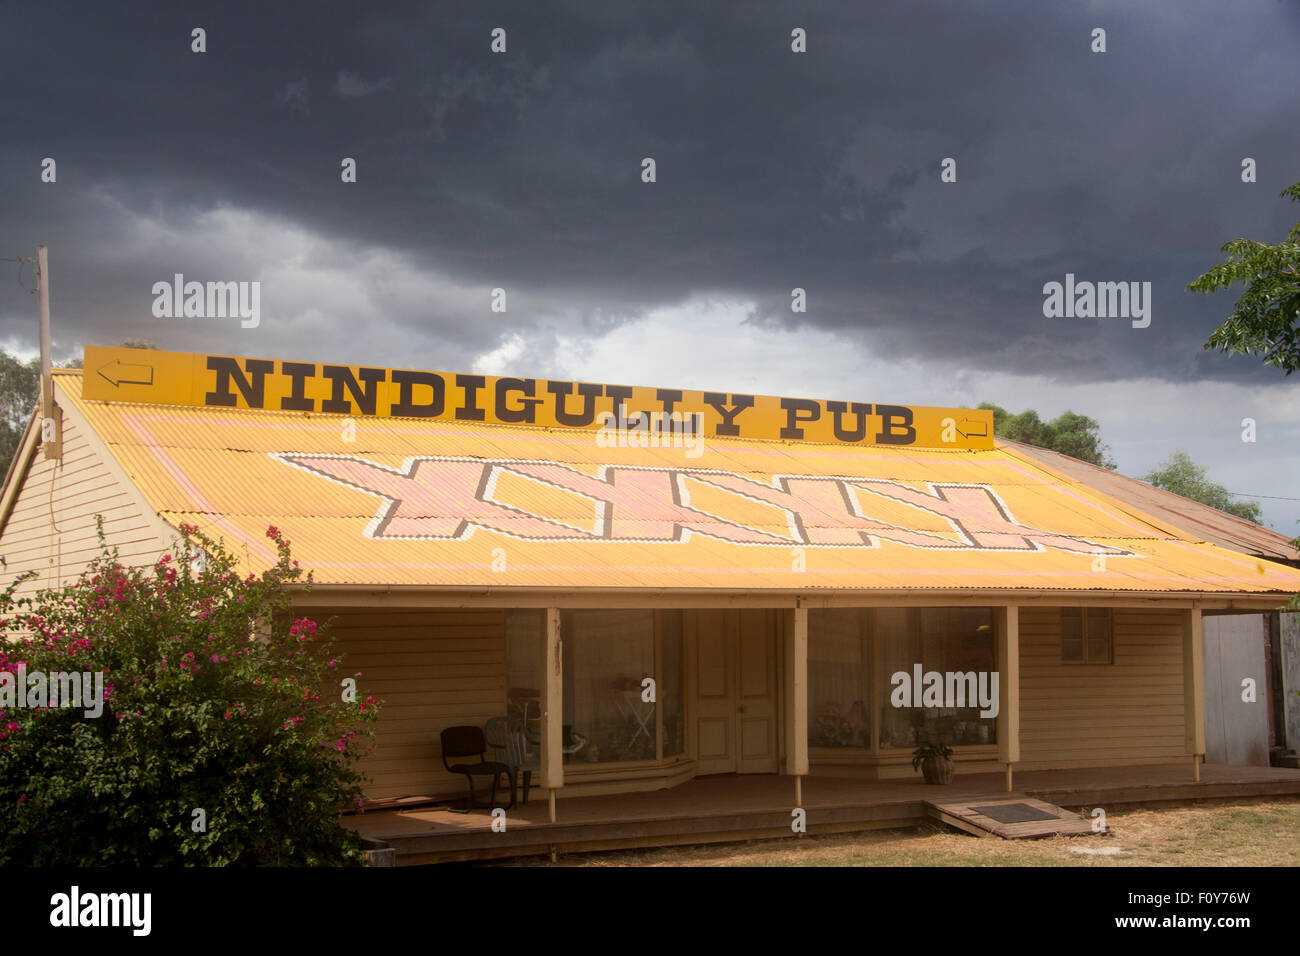 Nindigully Pub und Castlemaine XXXX Bier unterzeichnen am Dach des Hauses Nindigully Queensland Qld Australien Stockfoto